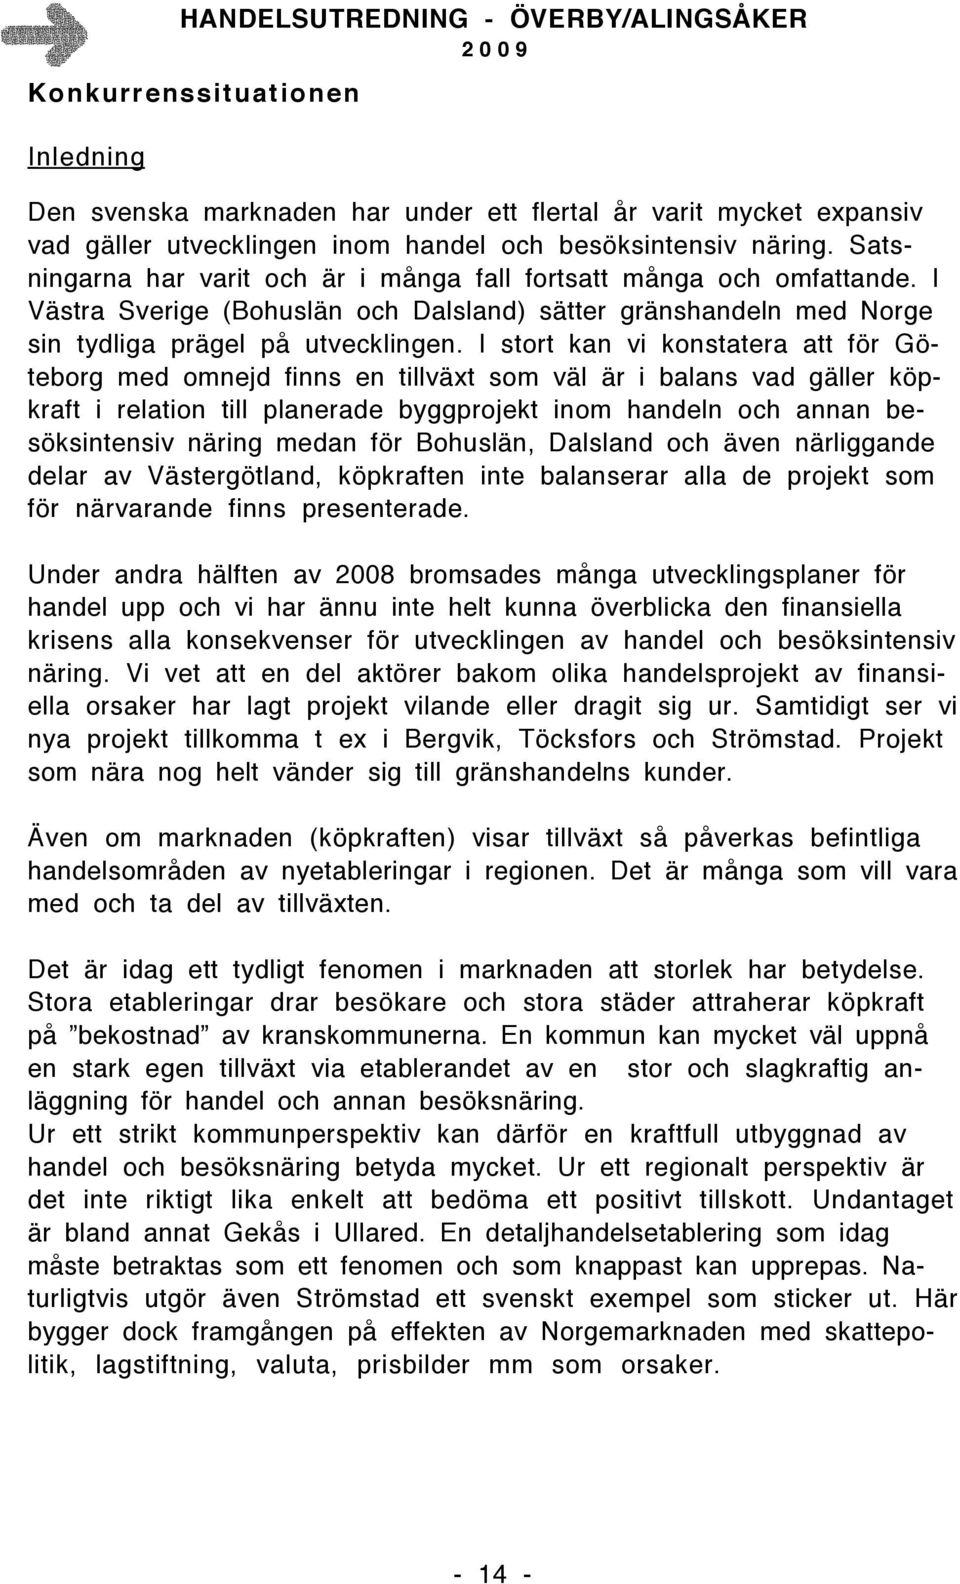 I stort kan vi konstatera att för Göteborg med omnejd finns en tillväxt som väl är i balans vad gäller köpkraft i relation till planerade byggprojekt inom handeln och annan besöksintensiv näring